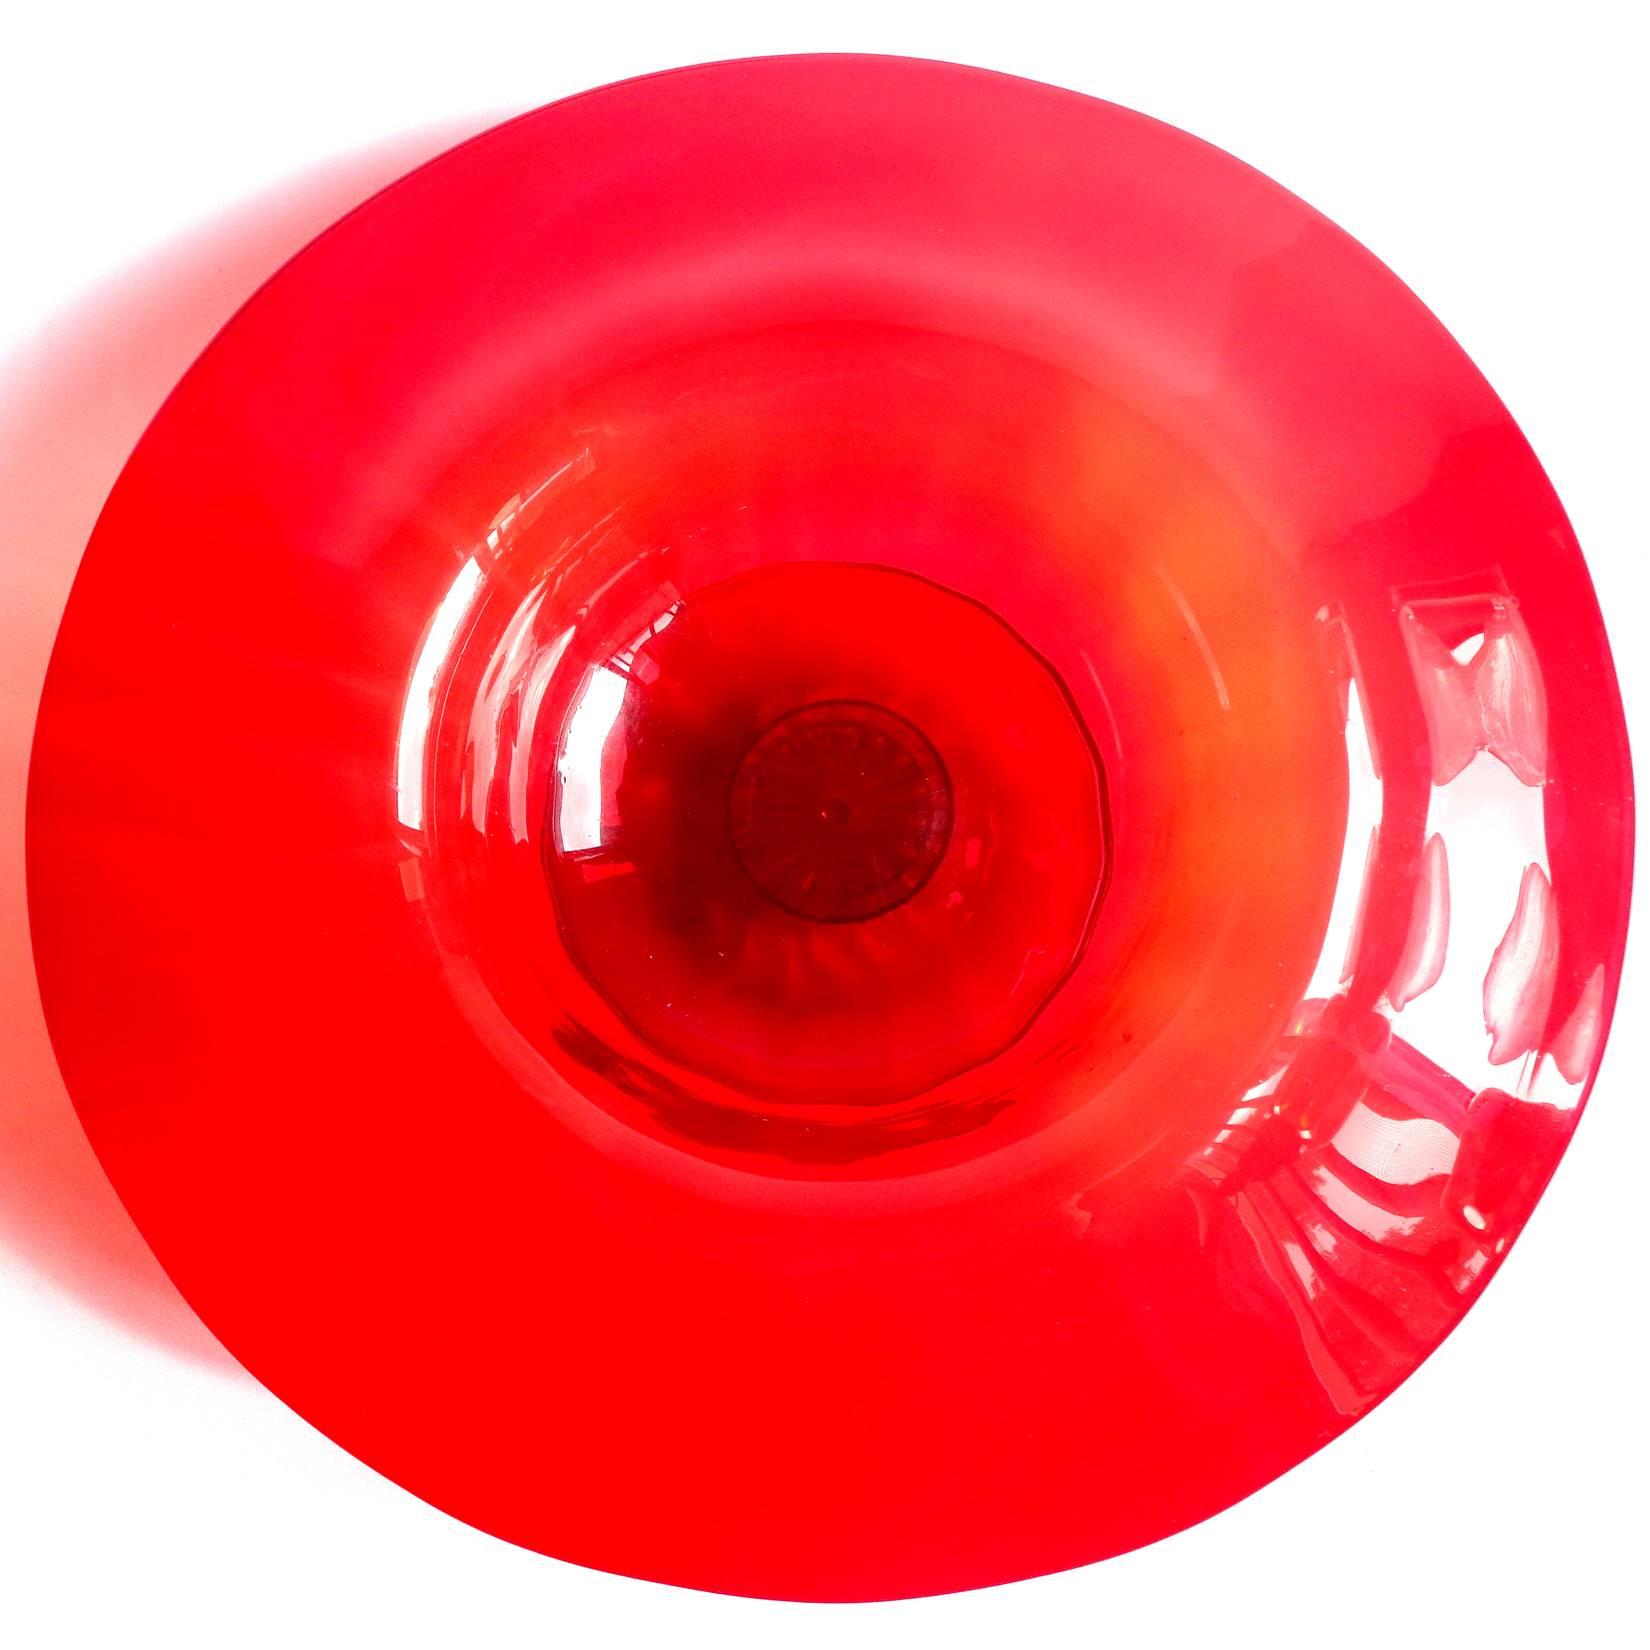 Magnifique grand bol en verre soufflé à la main de Murano, rouge rubis, avec des mouchetures d'or. Créé à la manière des entreprises Venini et Salviati, dans le style vénitien / véronais. Une couleur magnifique et un design élégant. Ce serait une